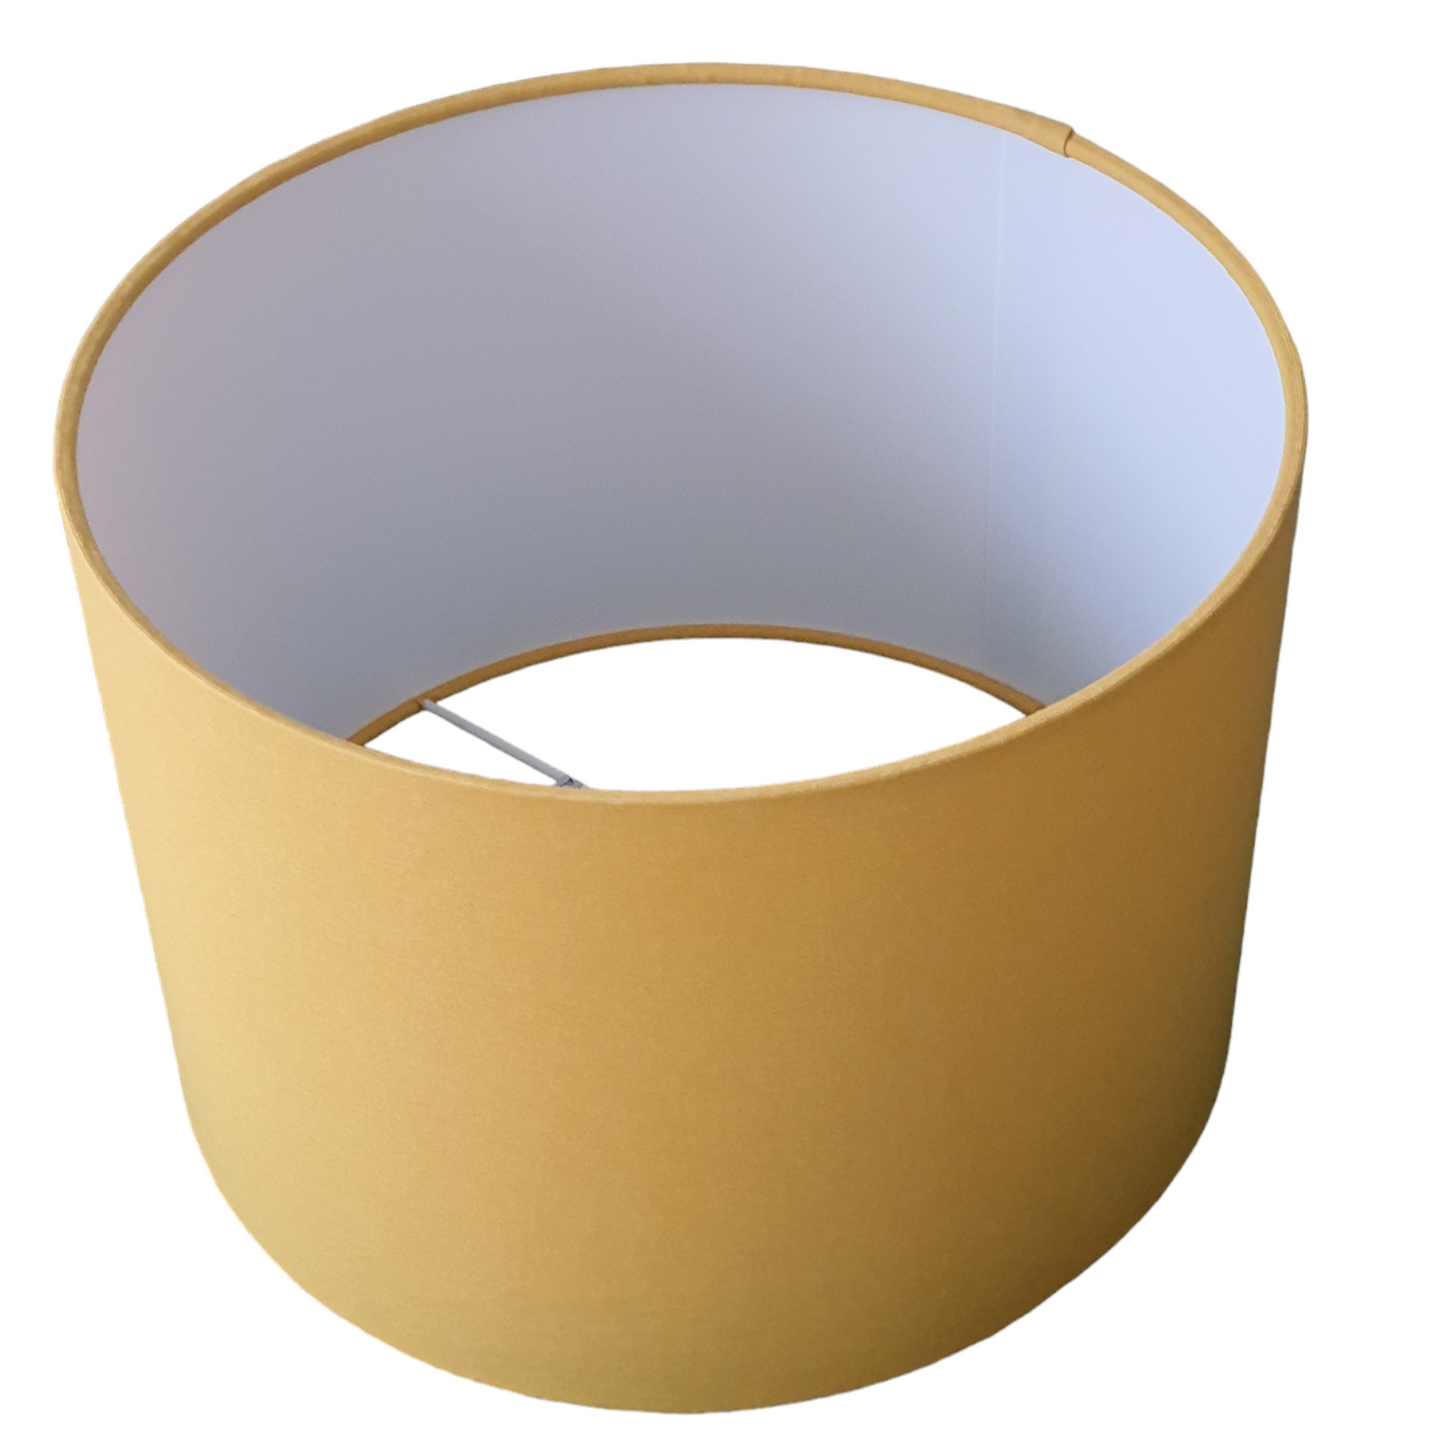 Handmade 30cm Drum Shade - Lamp/Ceiling Shade - Ochre Yellow